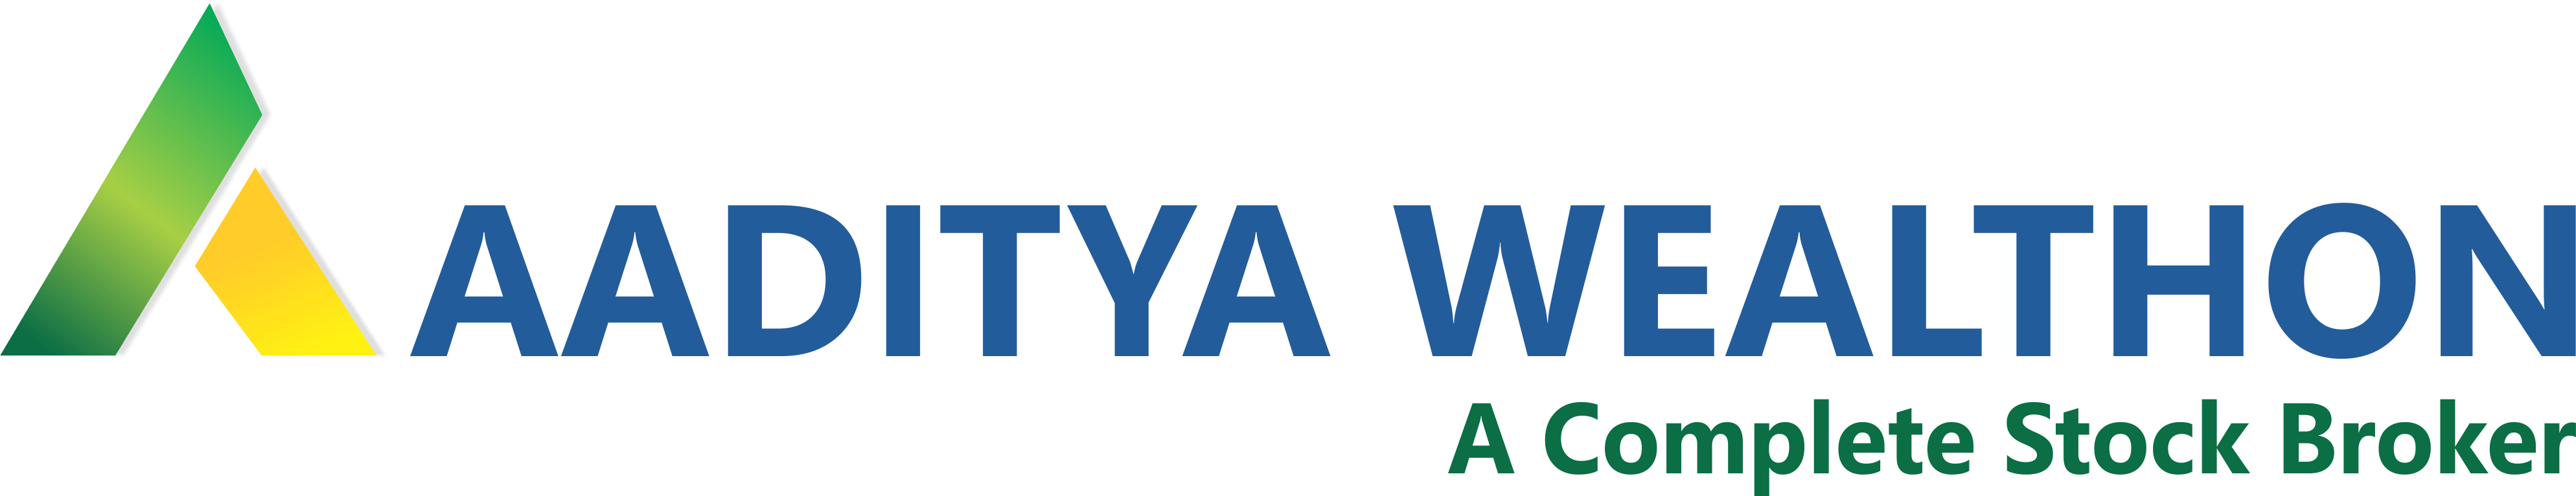 aaditya-wealth-logo